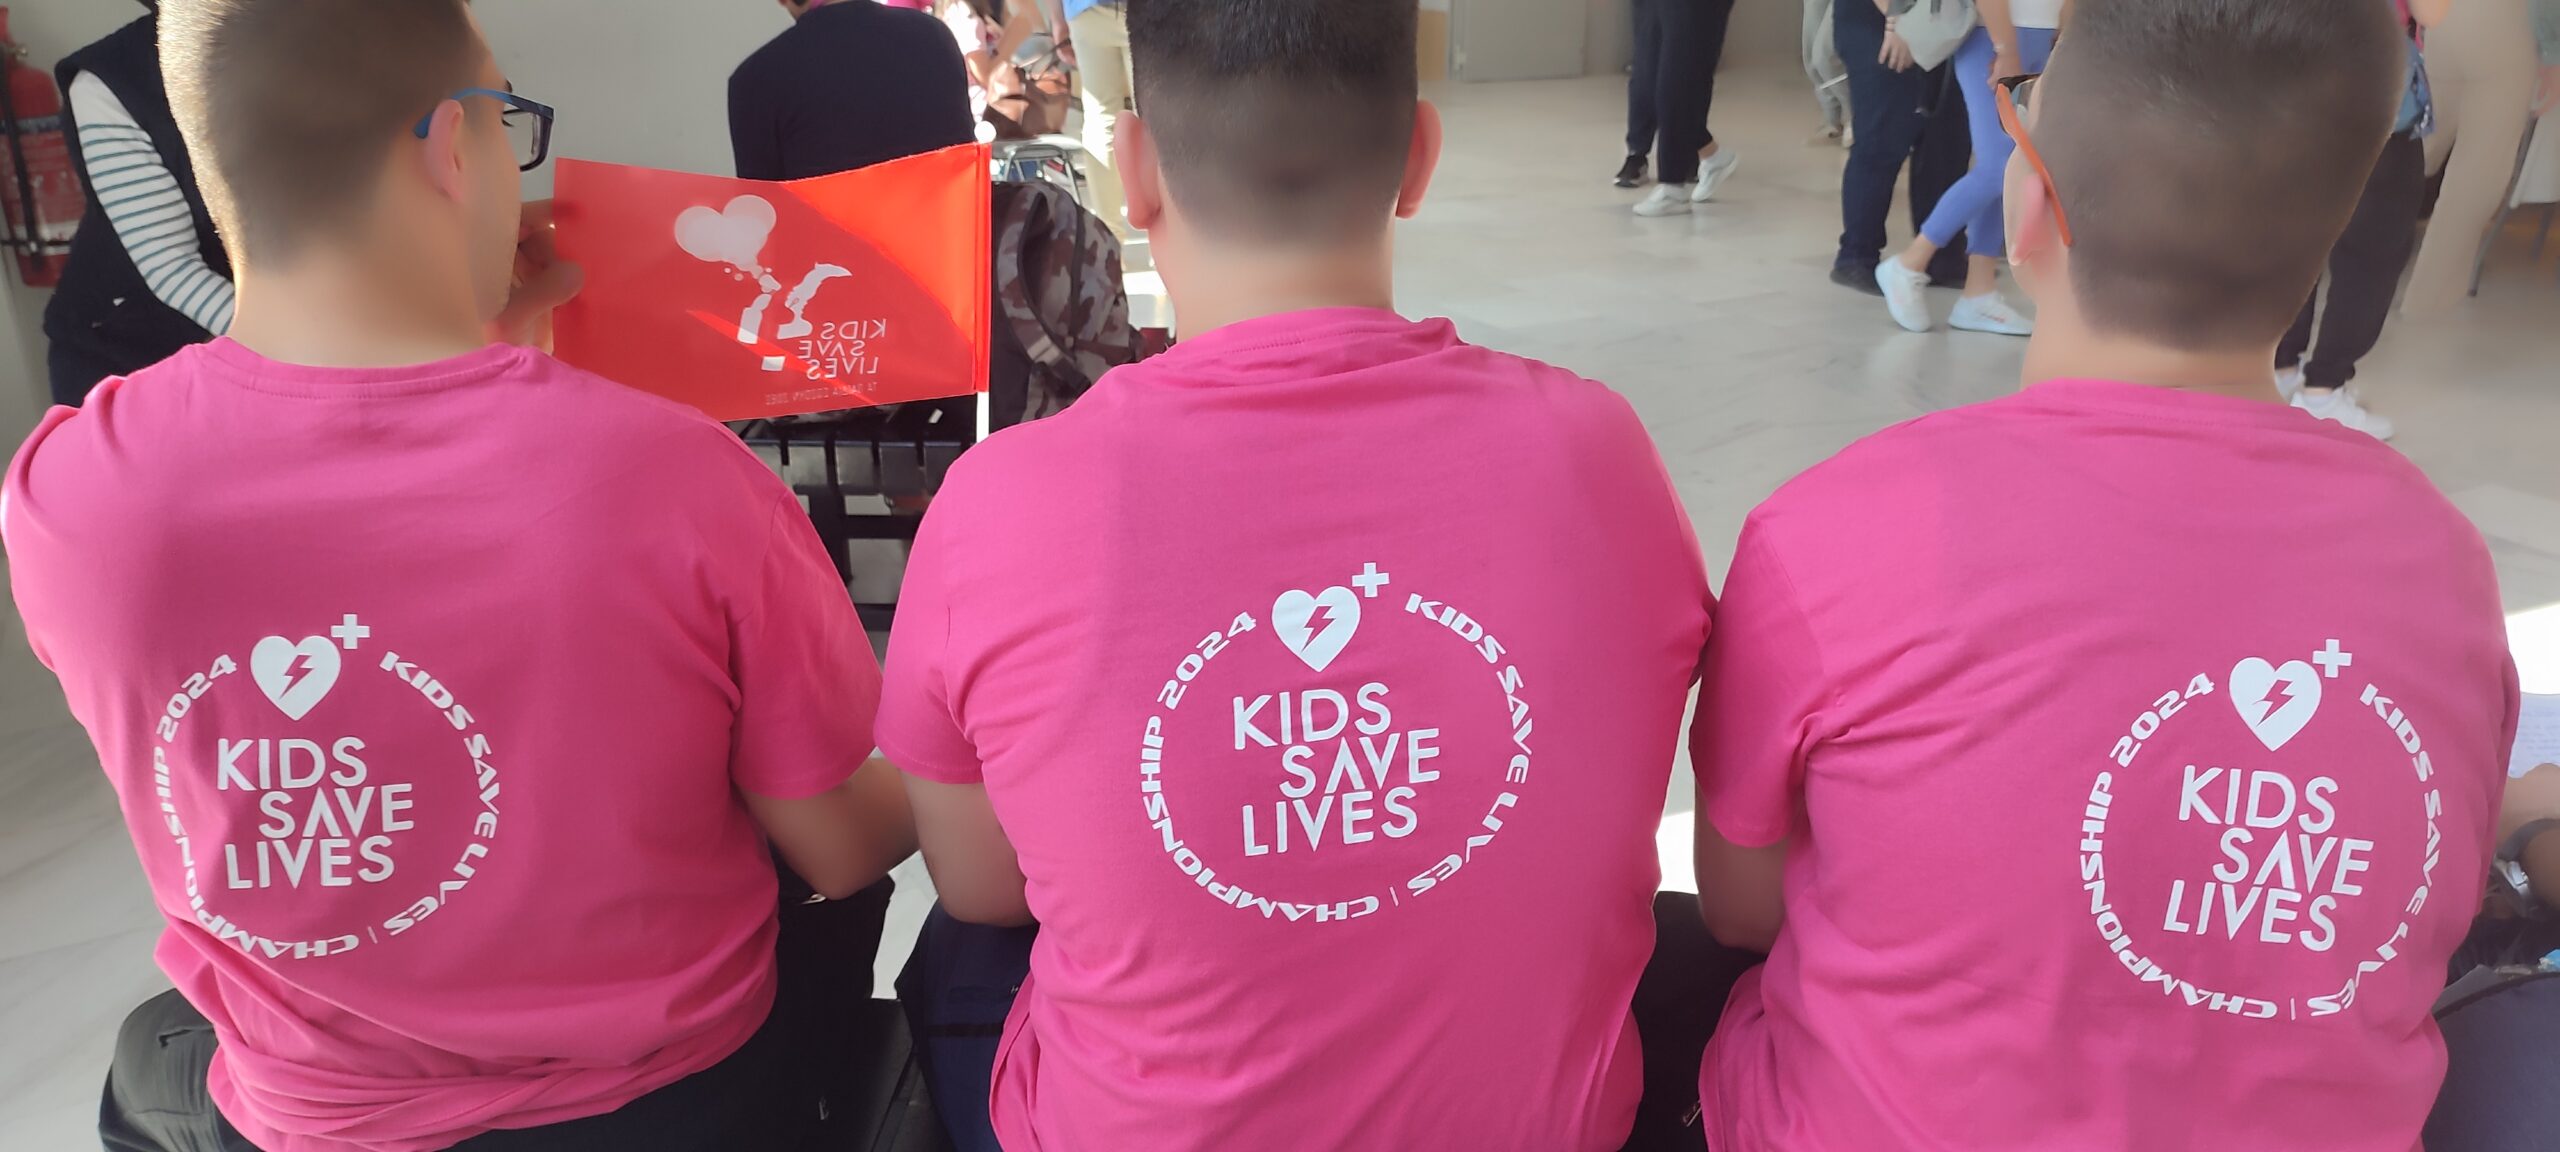 Συμμετοχή στο Διαγωνισμό ” Kids save lives”